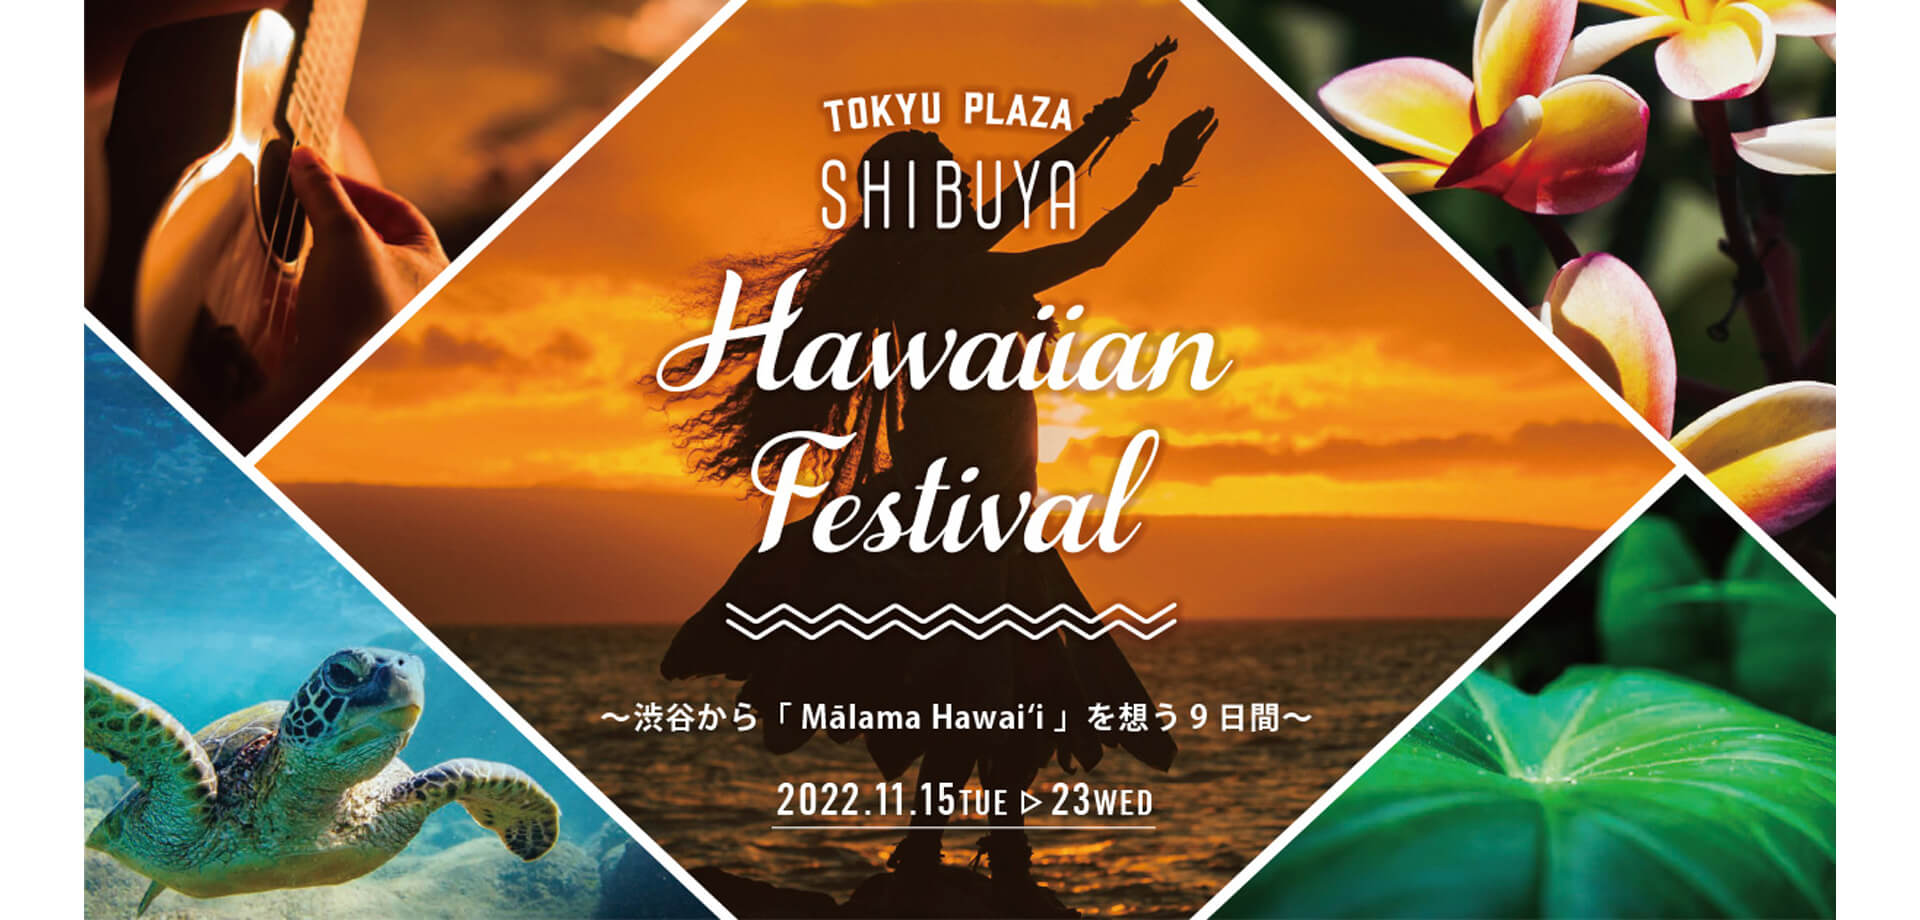 東急プラザ渋谷Hawaiian Festival